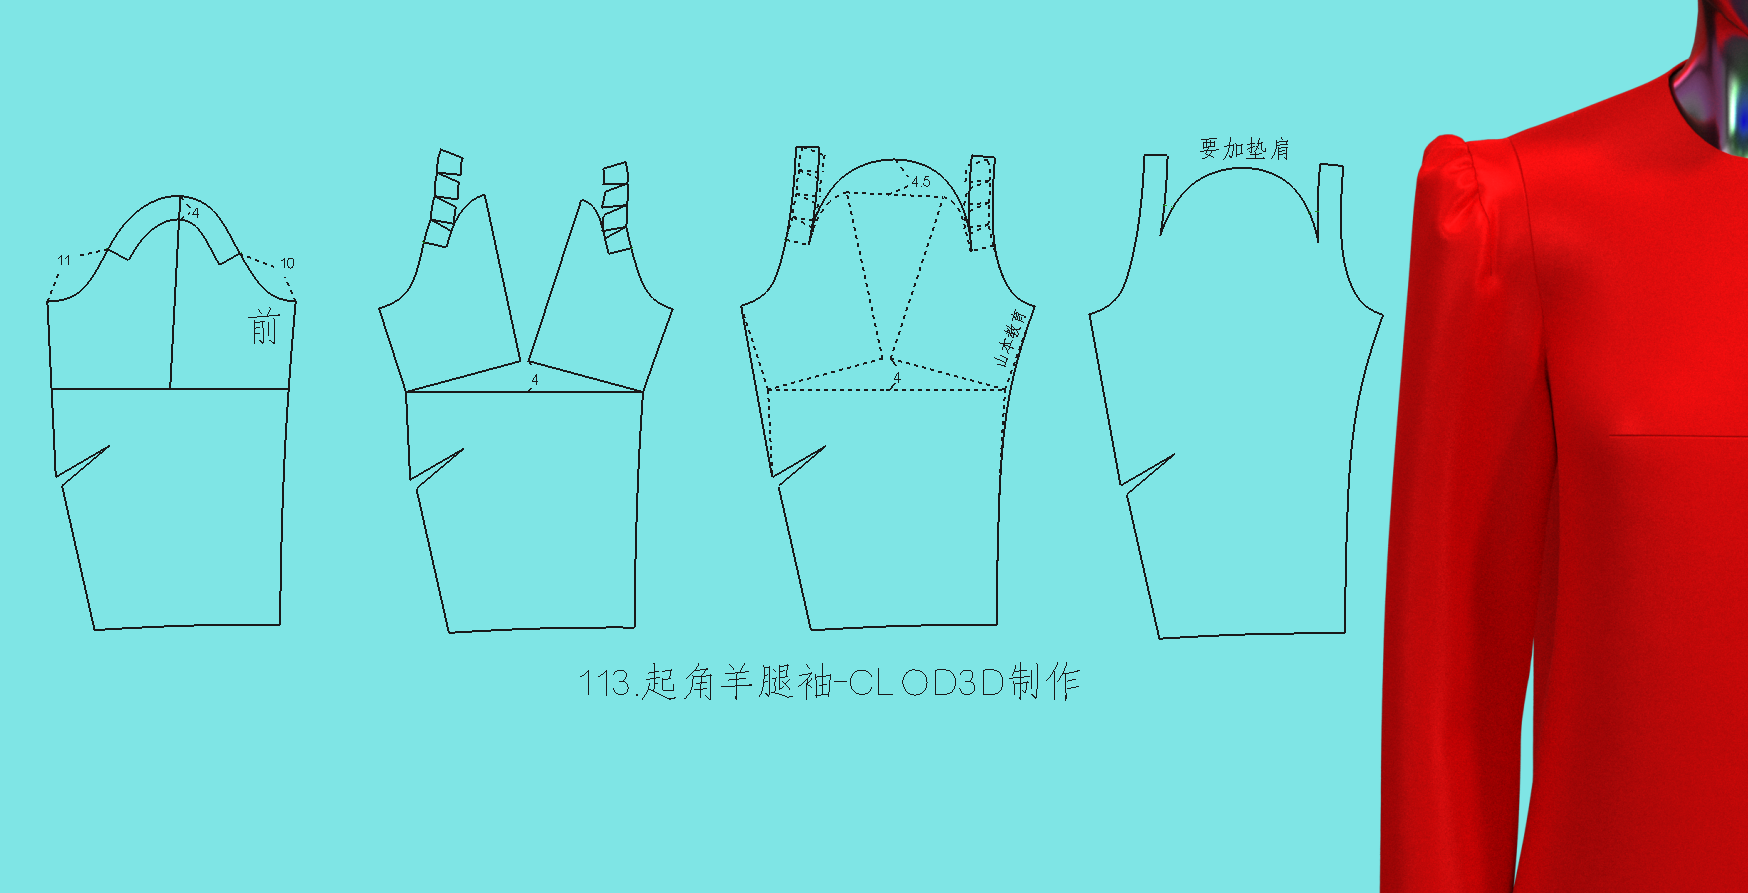 113.起角羊腿袖-CLOD3D制作_副本.png